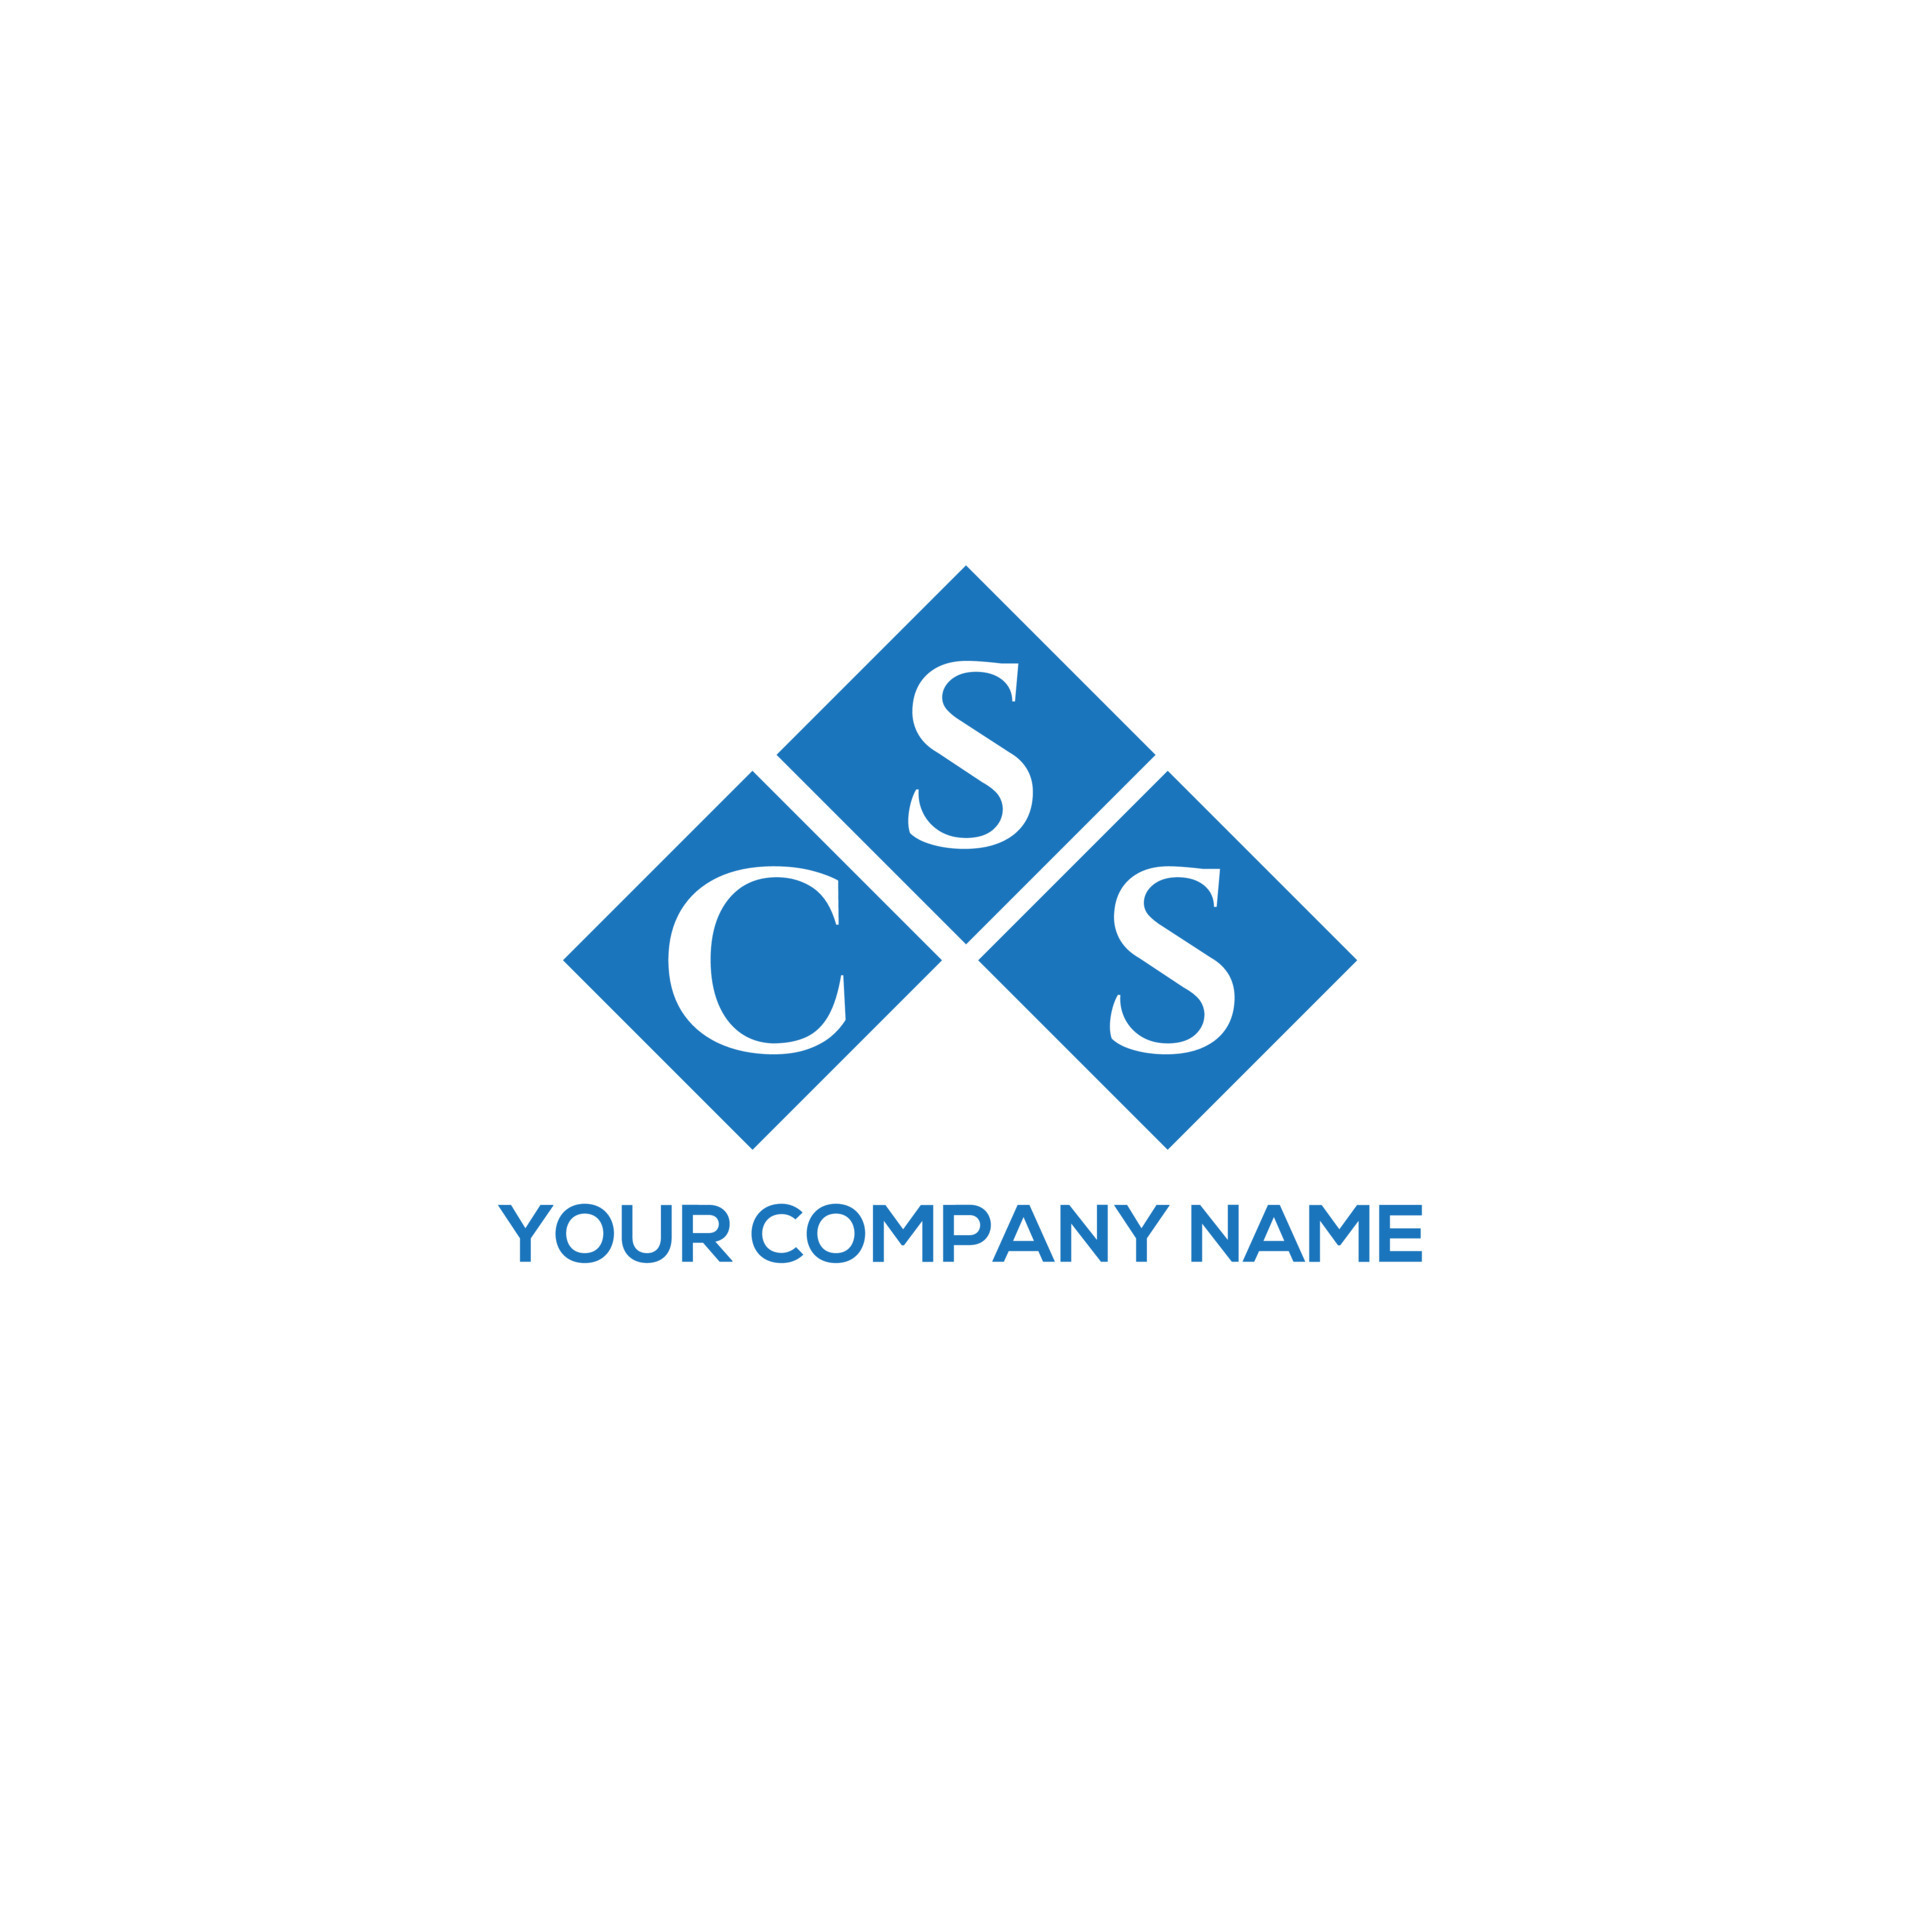 Với CSS Logo Design, bạn sẽ tìm thấy một logo thiết kế đẹp mắt, sáng tạo và chuyên nghiệp. Logo này sẽ cung cấp cho bạn những ý tưởng thiết kế mới mẻ và độc đáo để tạo nên một trang web hoàn hảo.